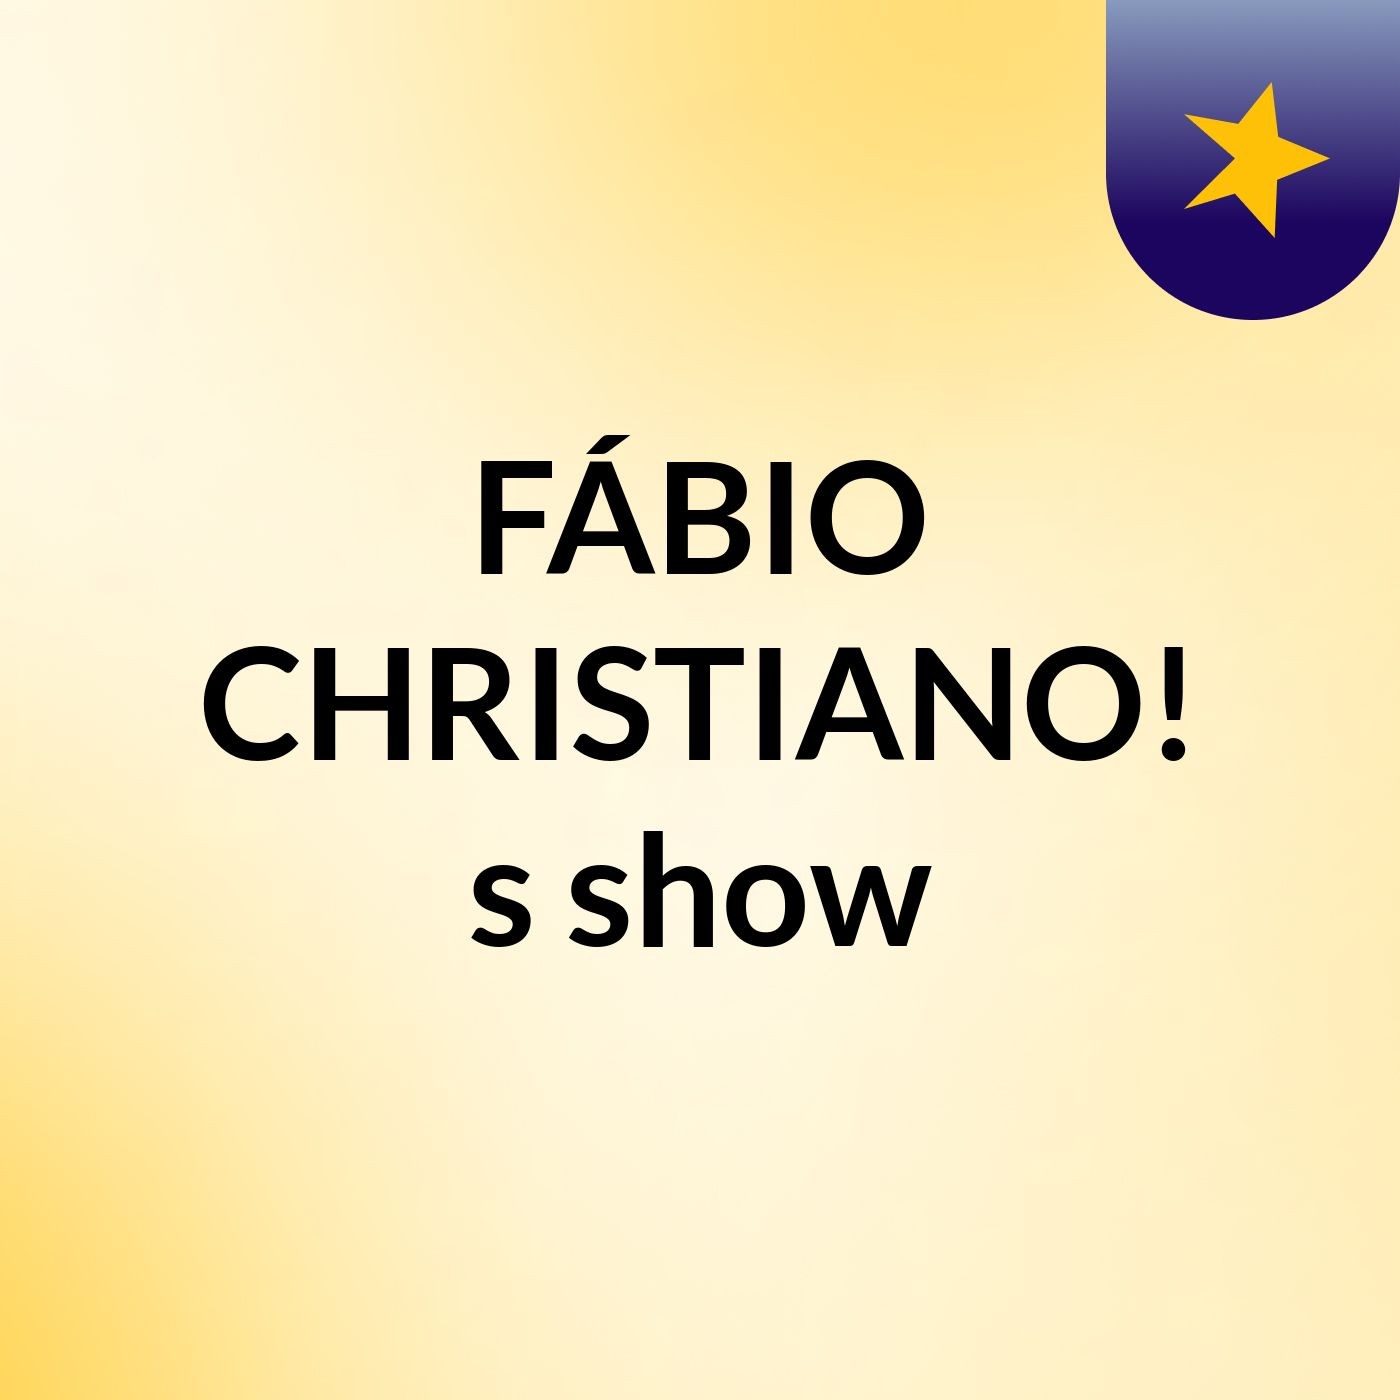 FÁBIO CHRISTIANO!'s show